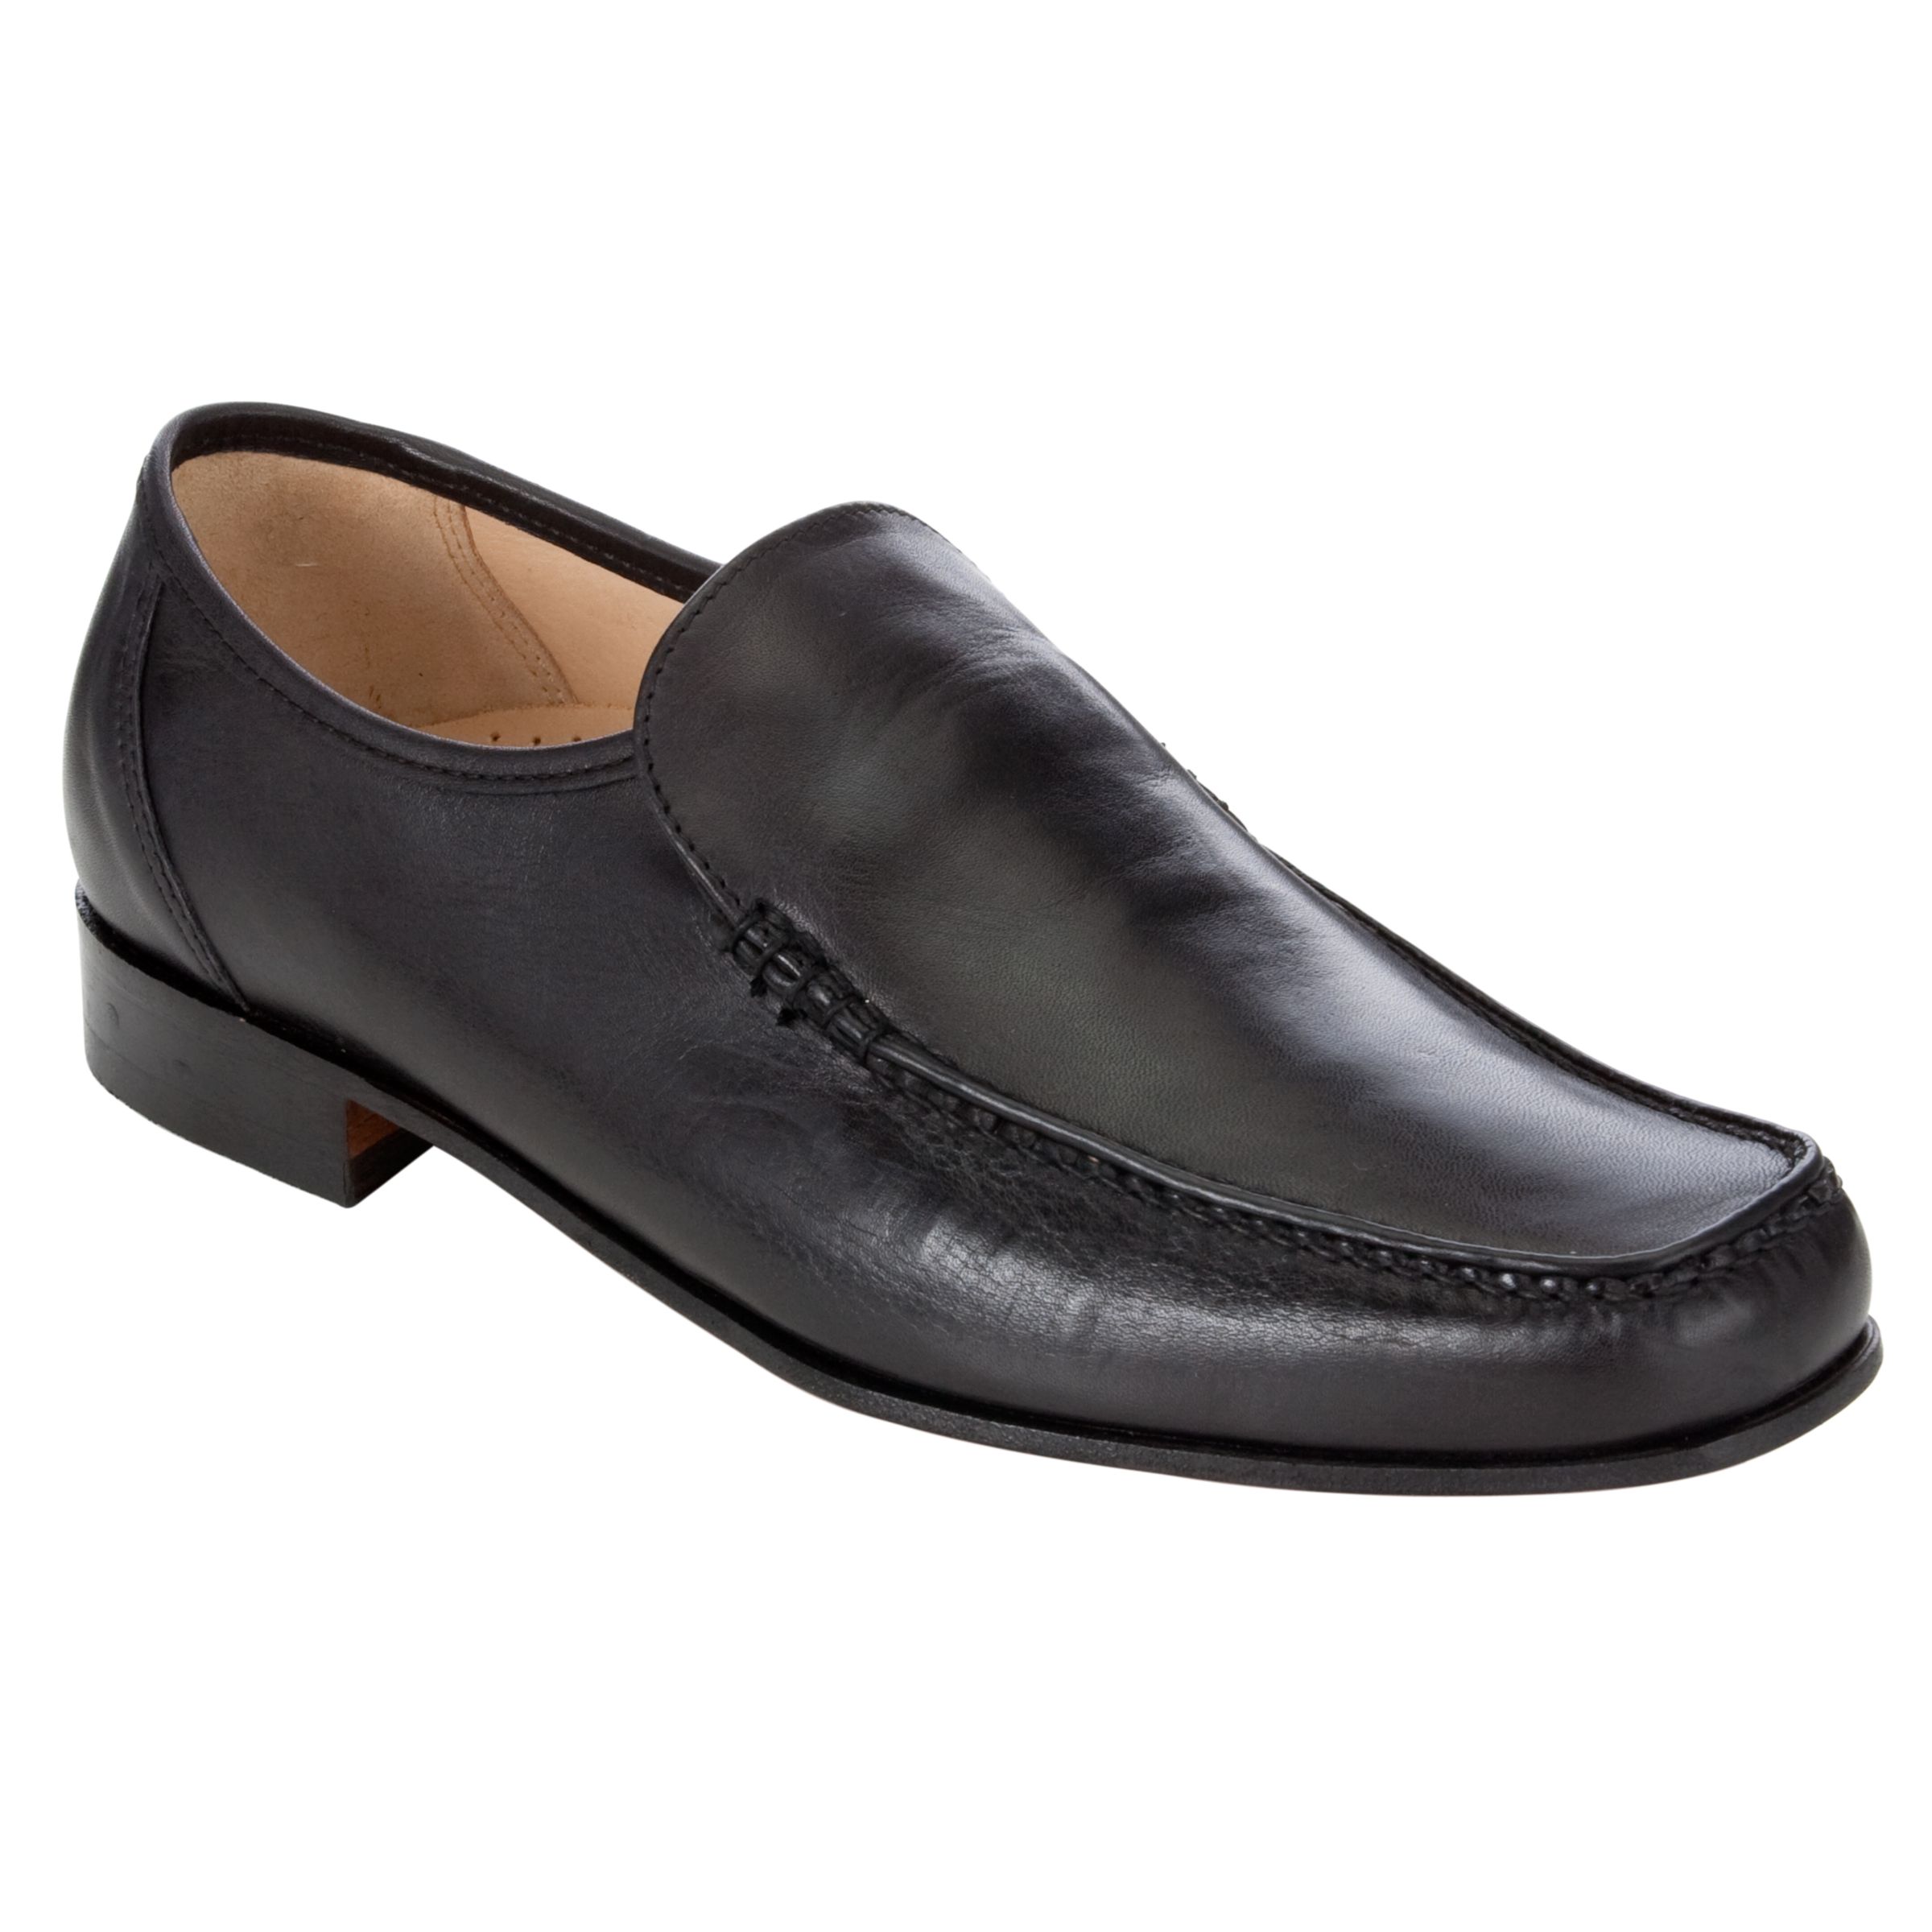 Barker Javron Moccasin Shoes, Black at John Lewis